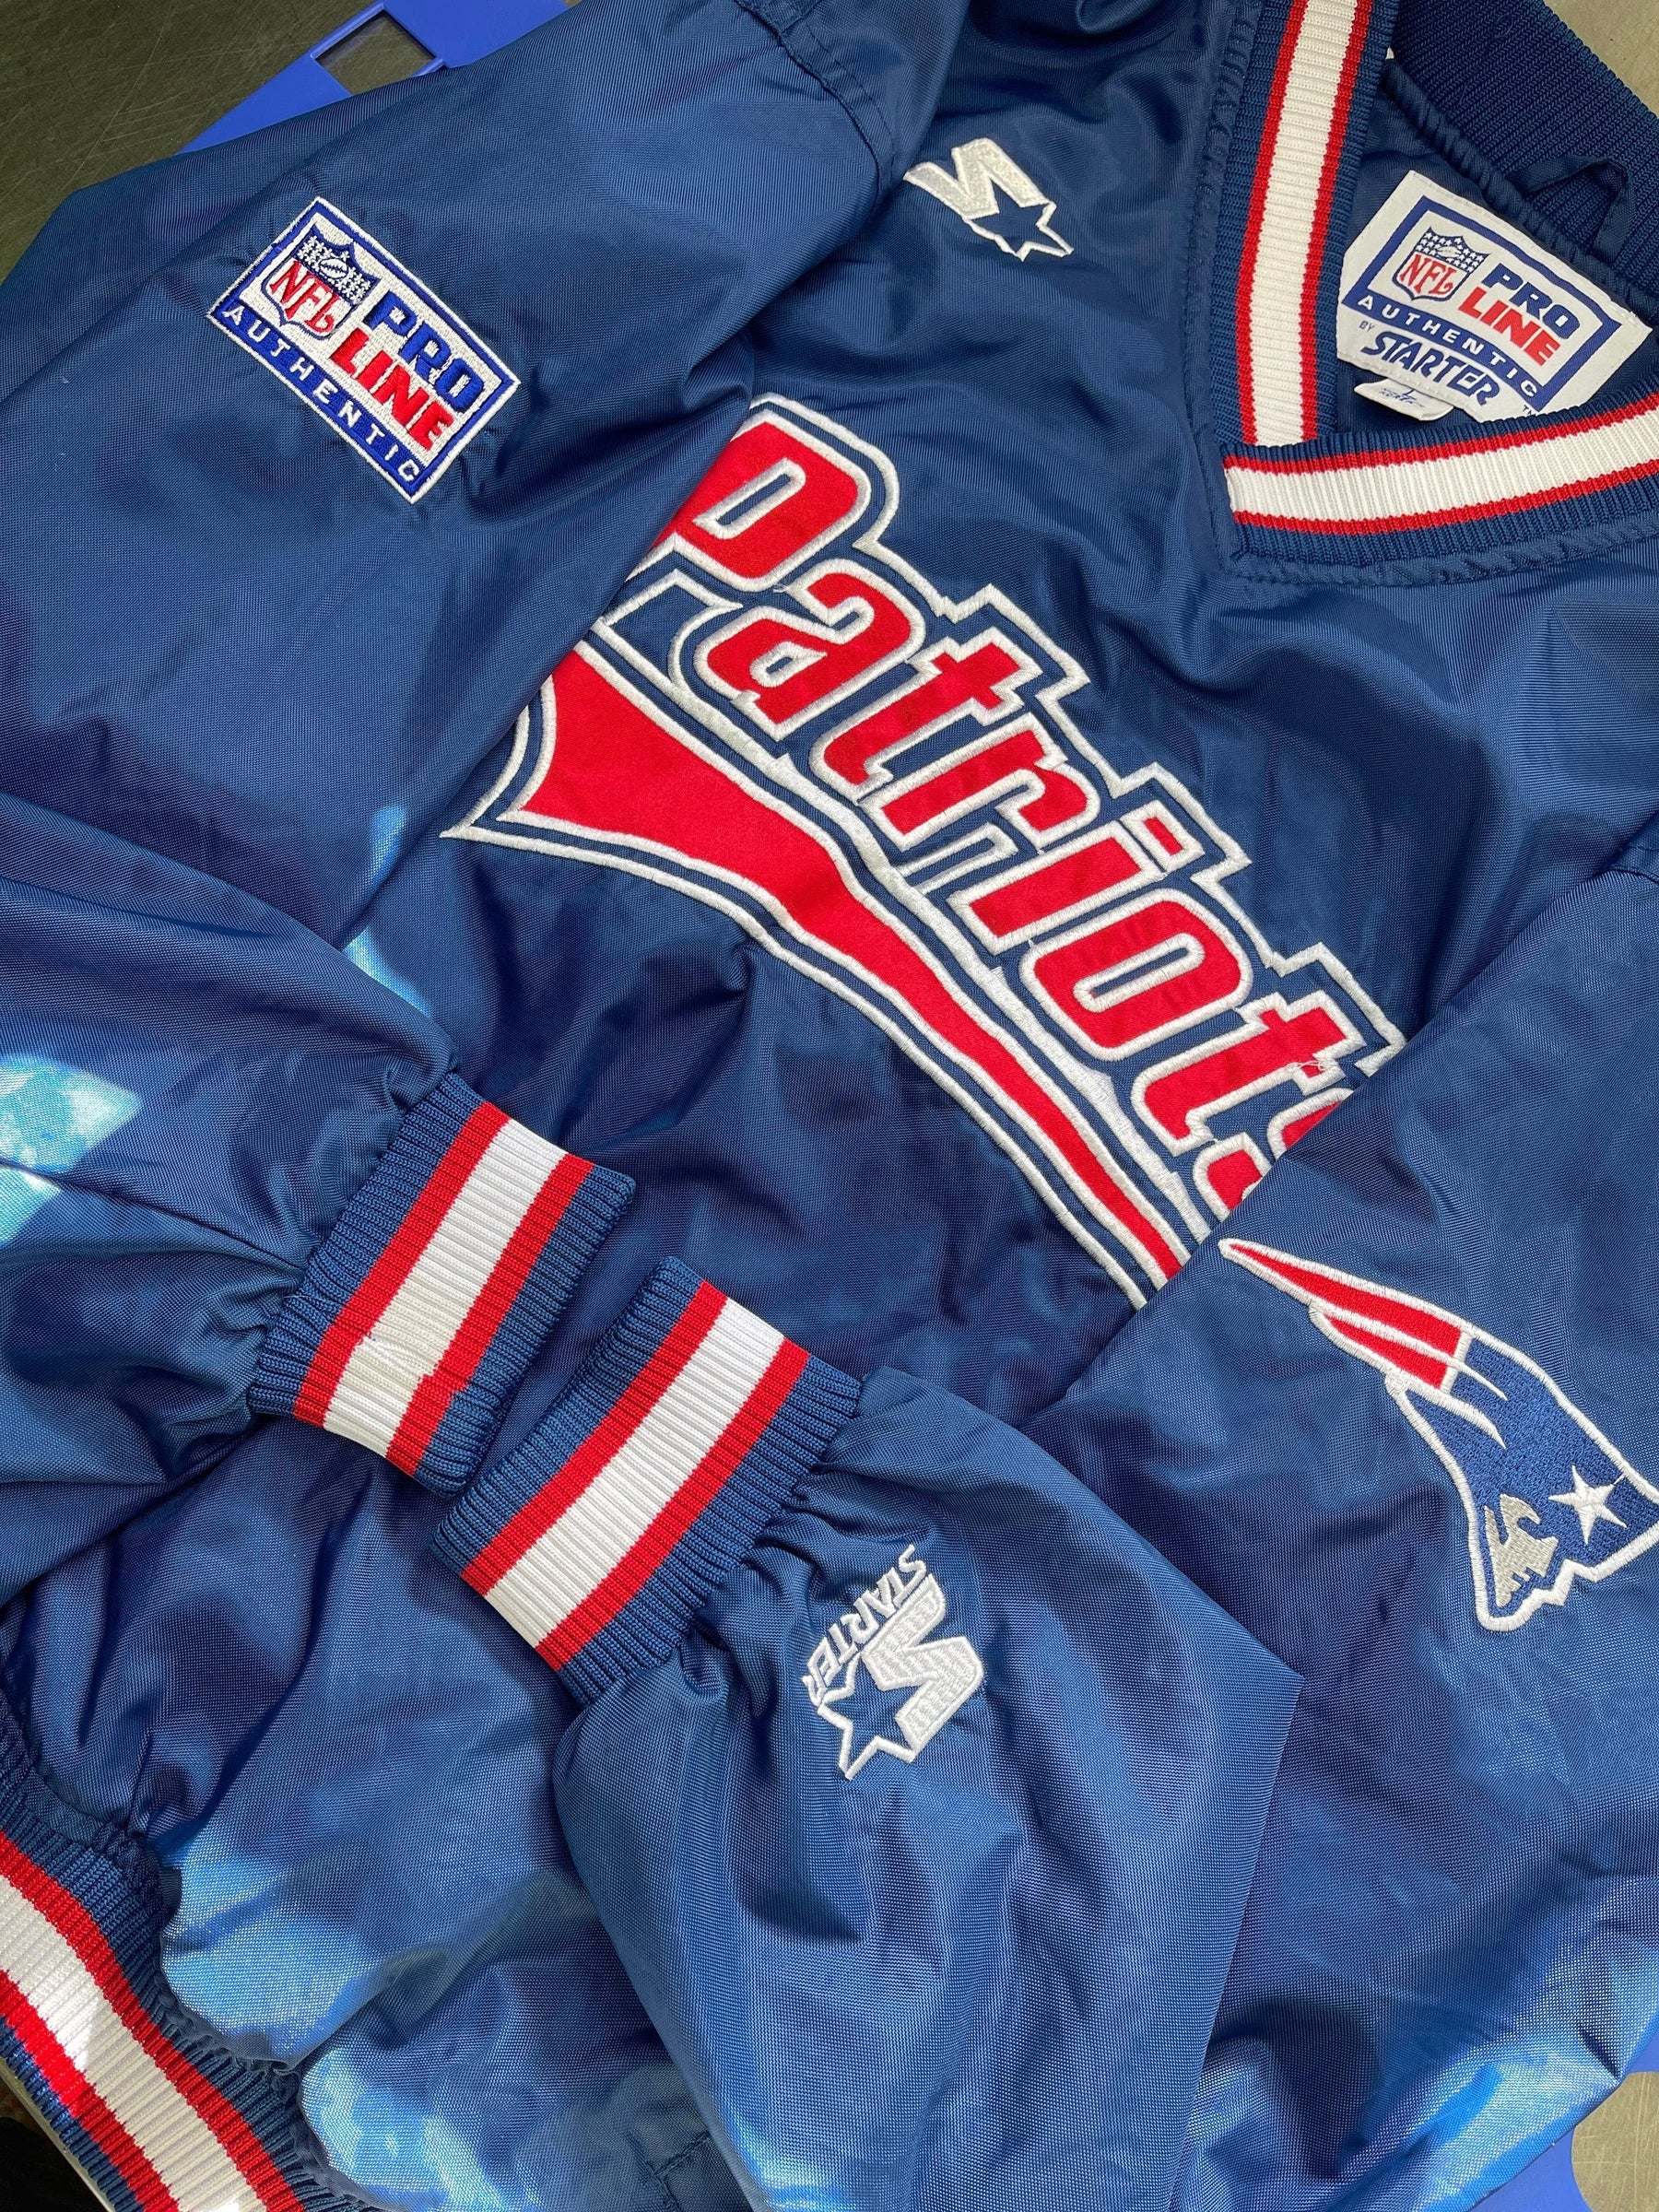 NFL New England Patriots Vintage Starter Sideline Pullover Jacket Youth Large 14-16